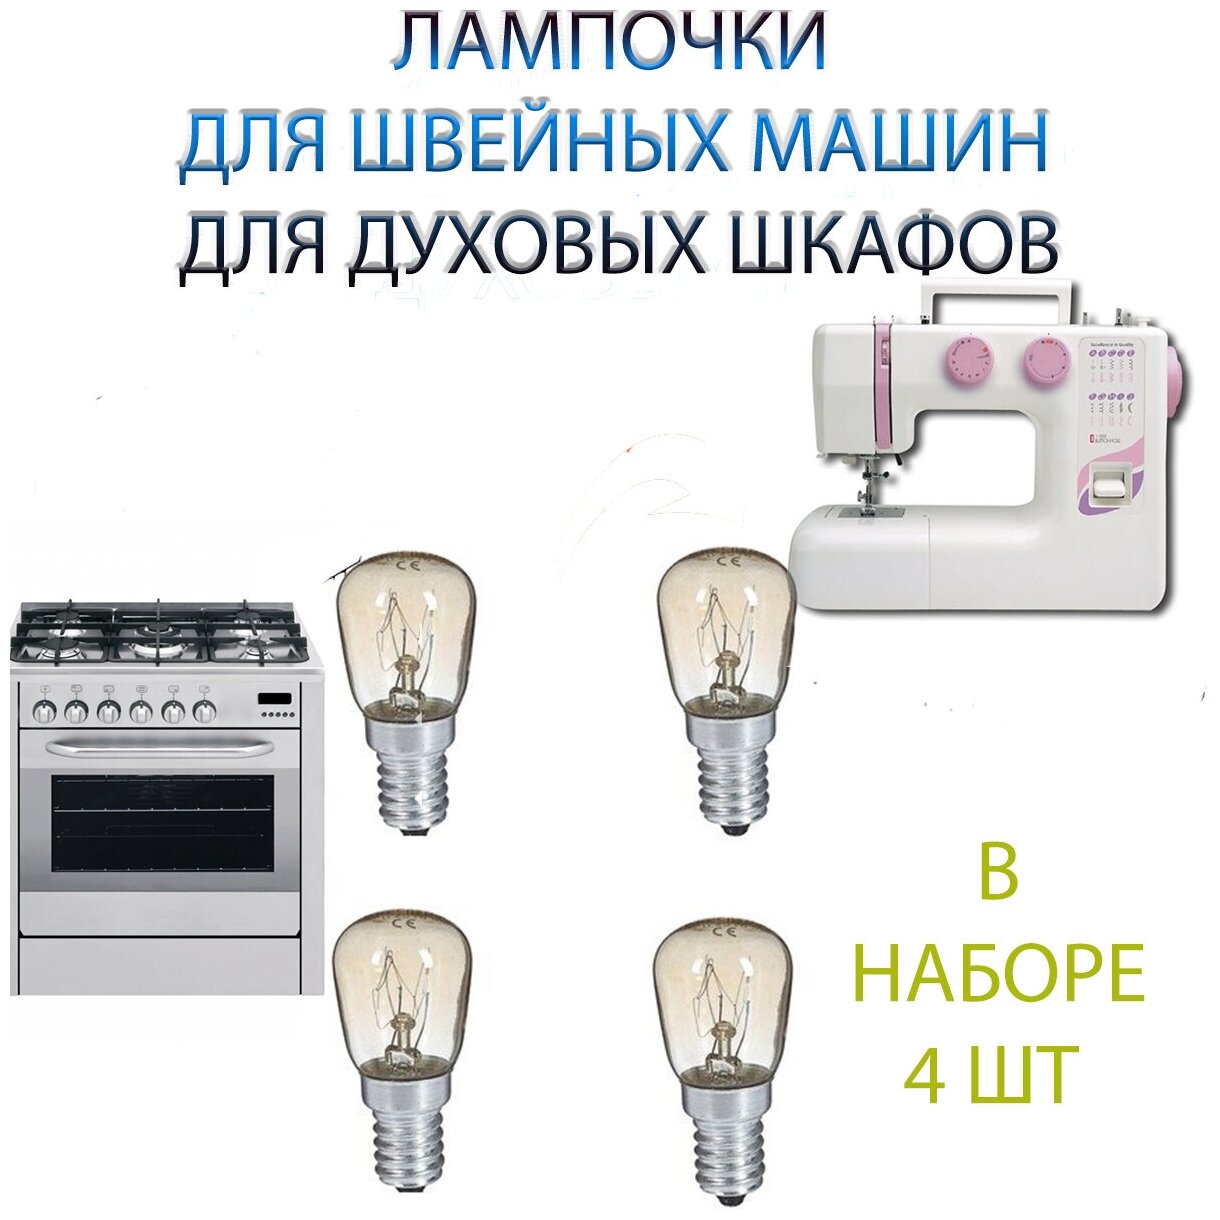 Лампочки для швейной машины 4 шт лампочки для духового шкафа (Е14 15 ВТ)